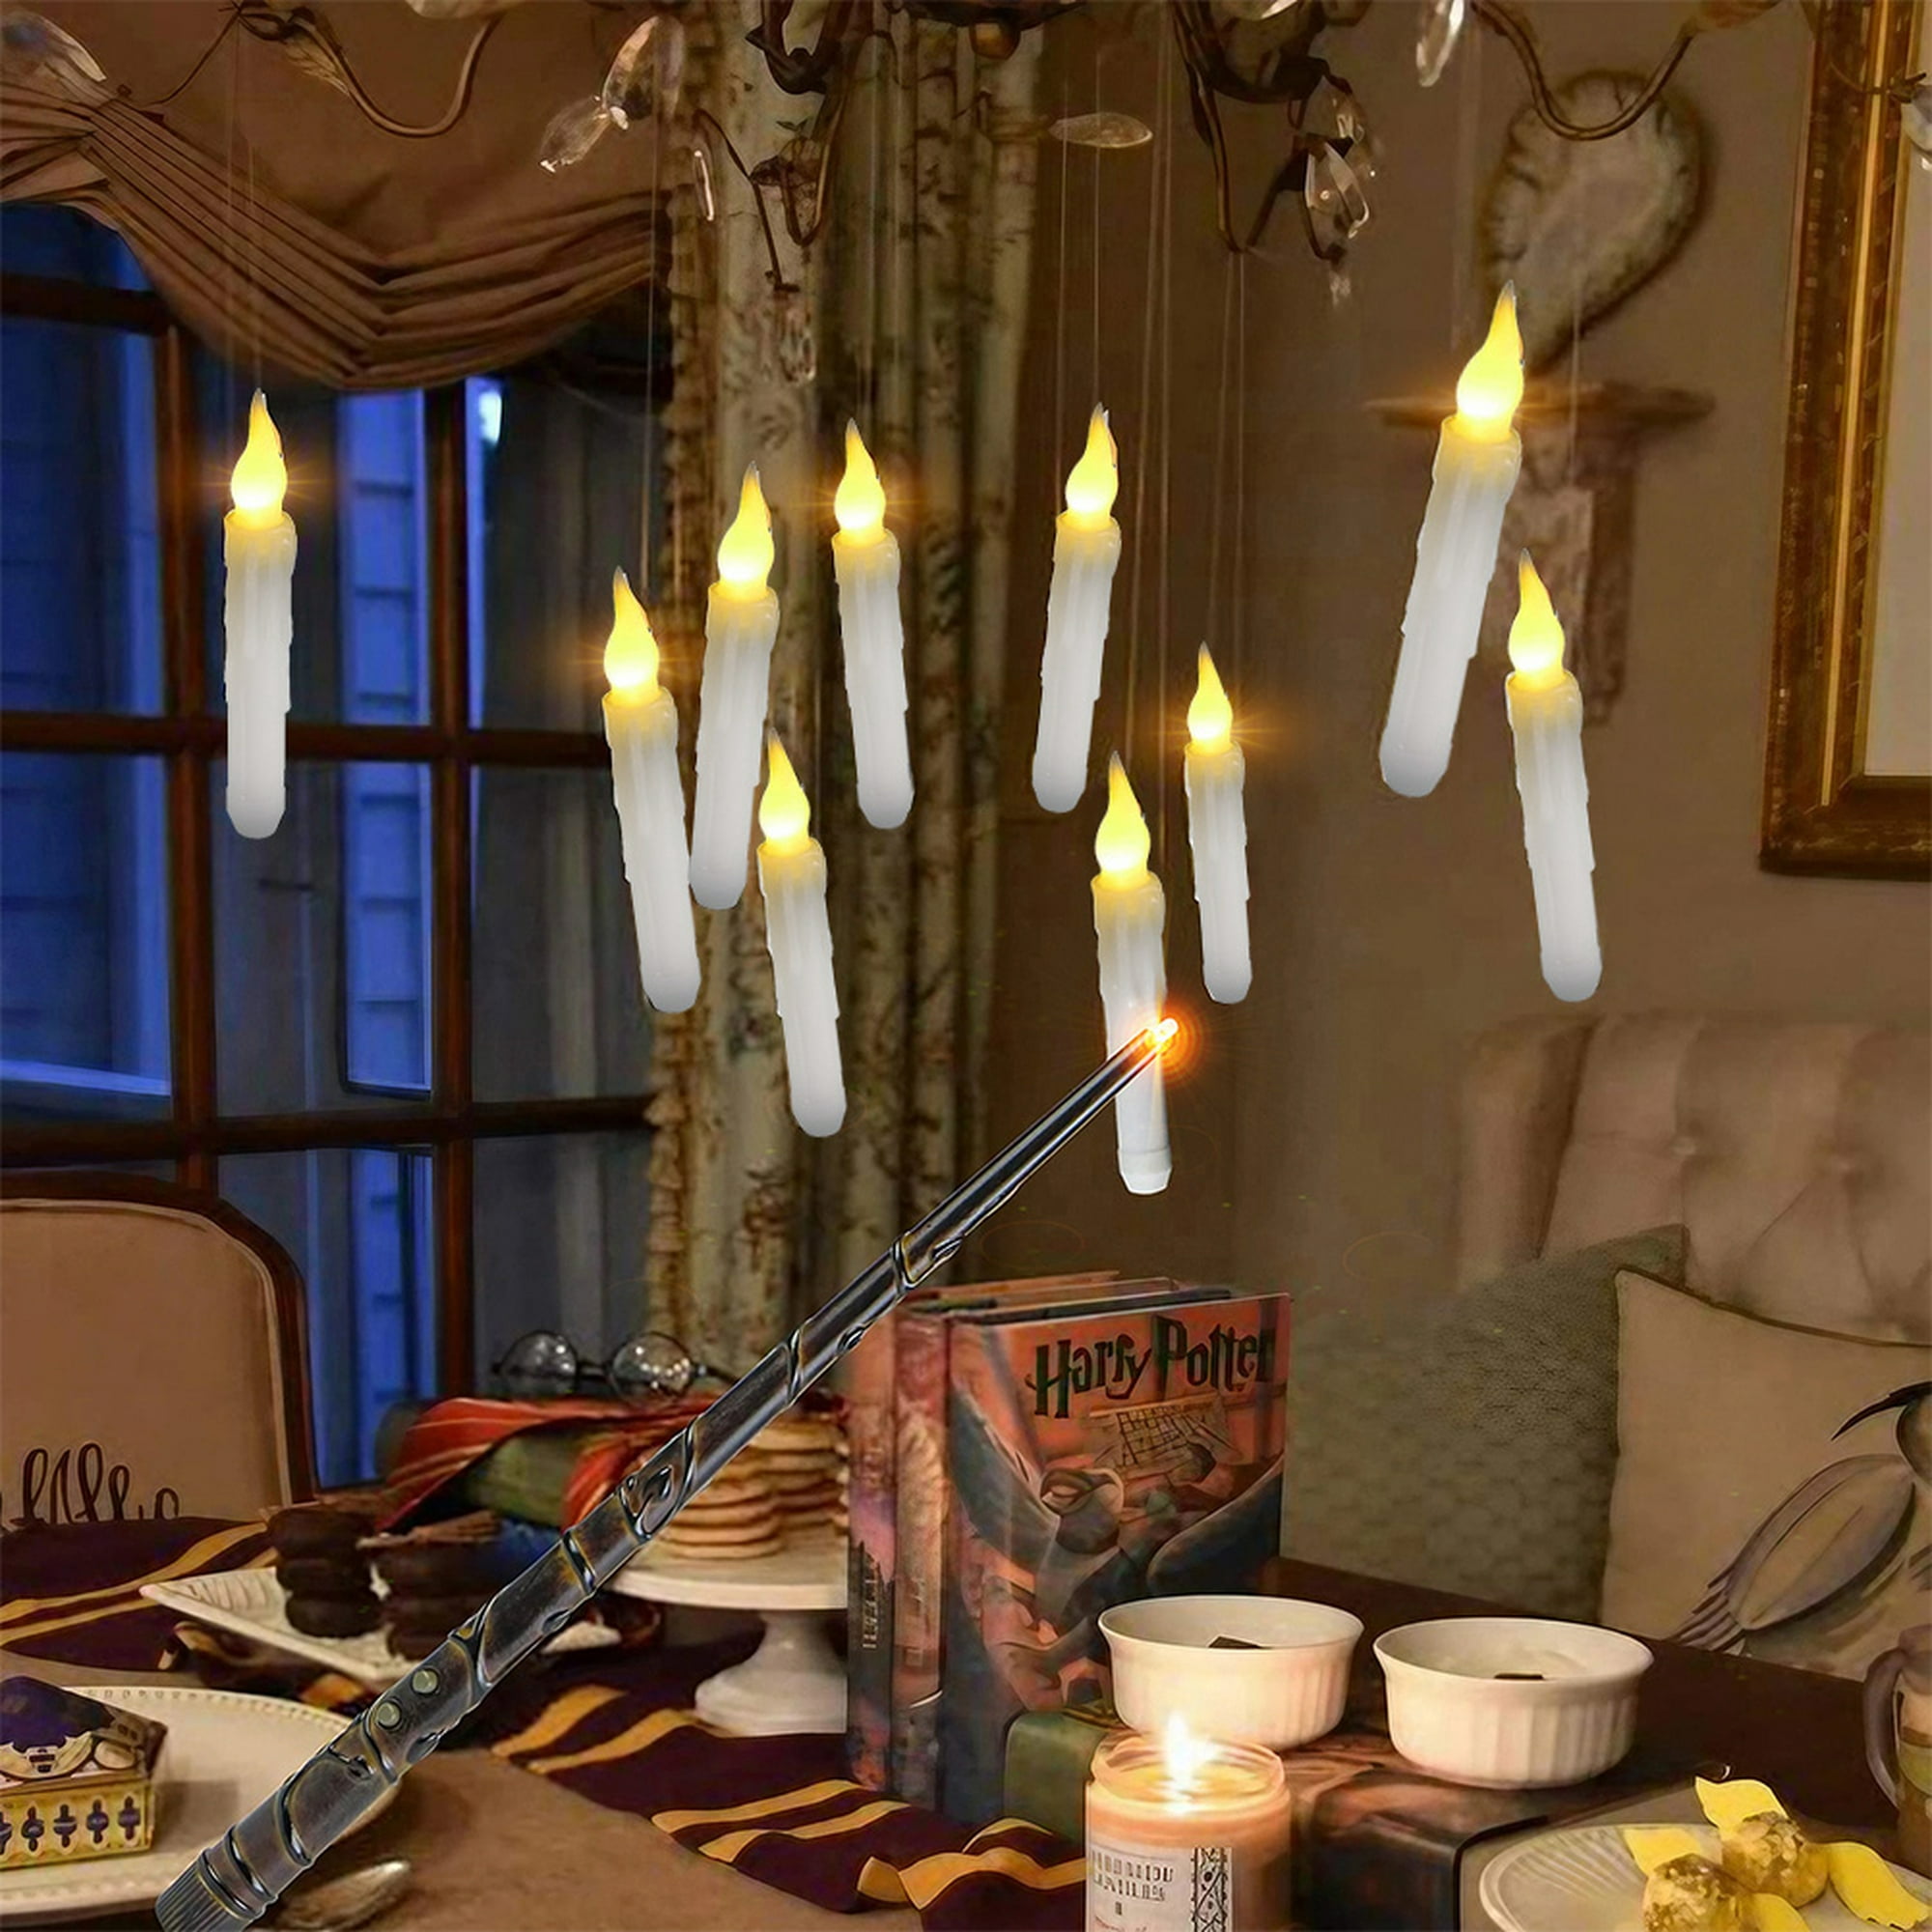 12 velas flotantes de Harry Potter con control remoto, funciona con pilas,  velas parpadeantes sin llama para Halloween, hogar, fiesta, decoración de